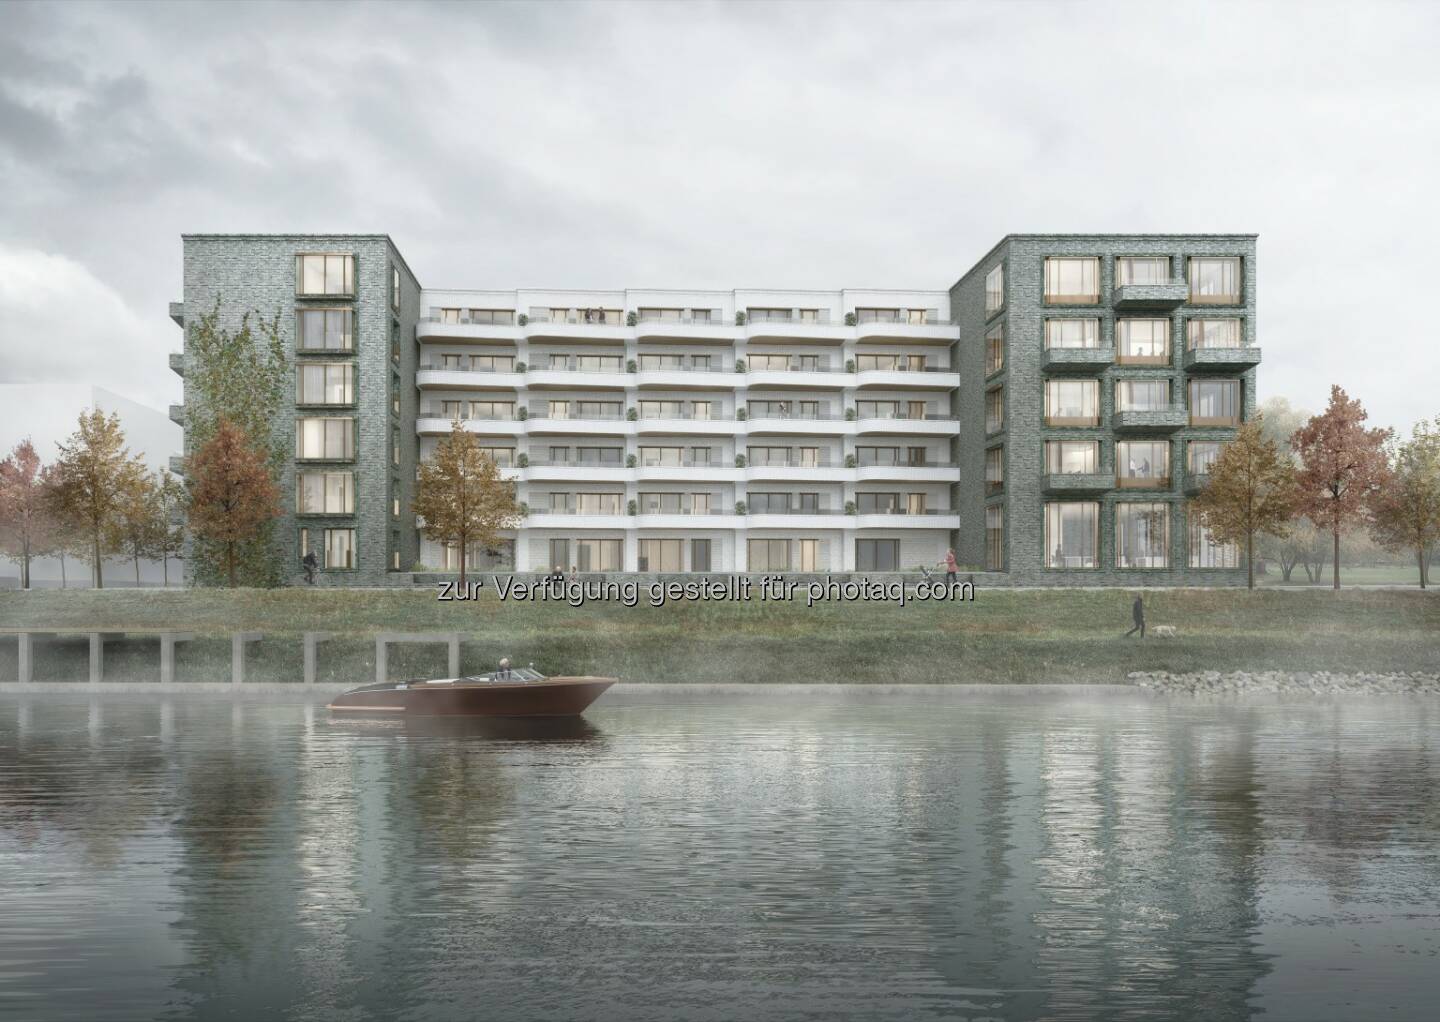  CA Immo hat einen Architekturwettbewerb für ein weiteres Büro- und Wohngebäude im Quartier Zollhafen Mainz abgeschlossen. Die Jury unter dem Vorsitz von Prof. Johann Eisele prämierte den Entwurf von happarchitecture. JJH Architektengesellschaft mbH einstimmig mit dem 1. Preis. Quelle: CA Immo